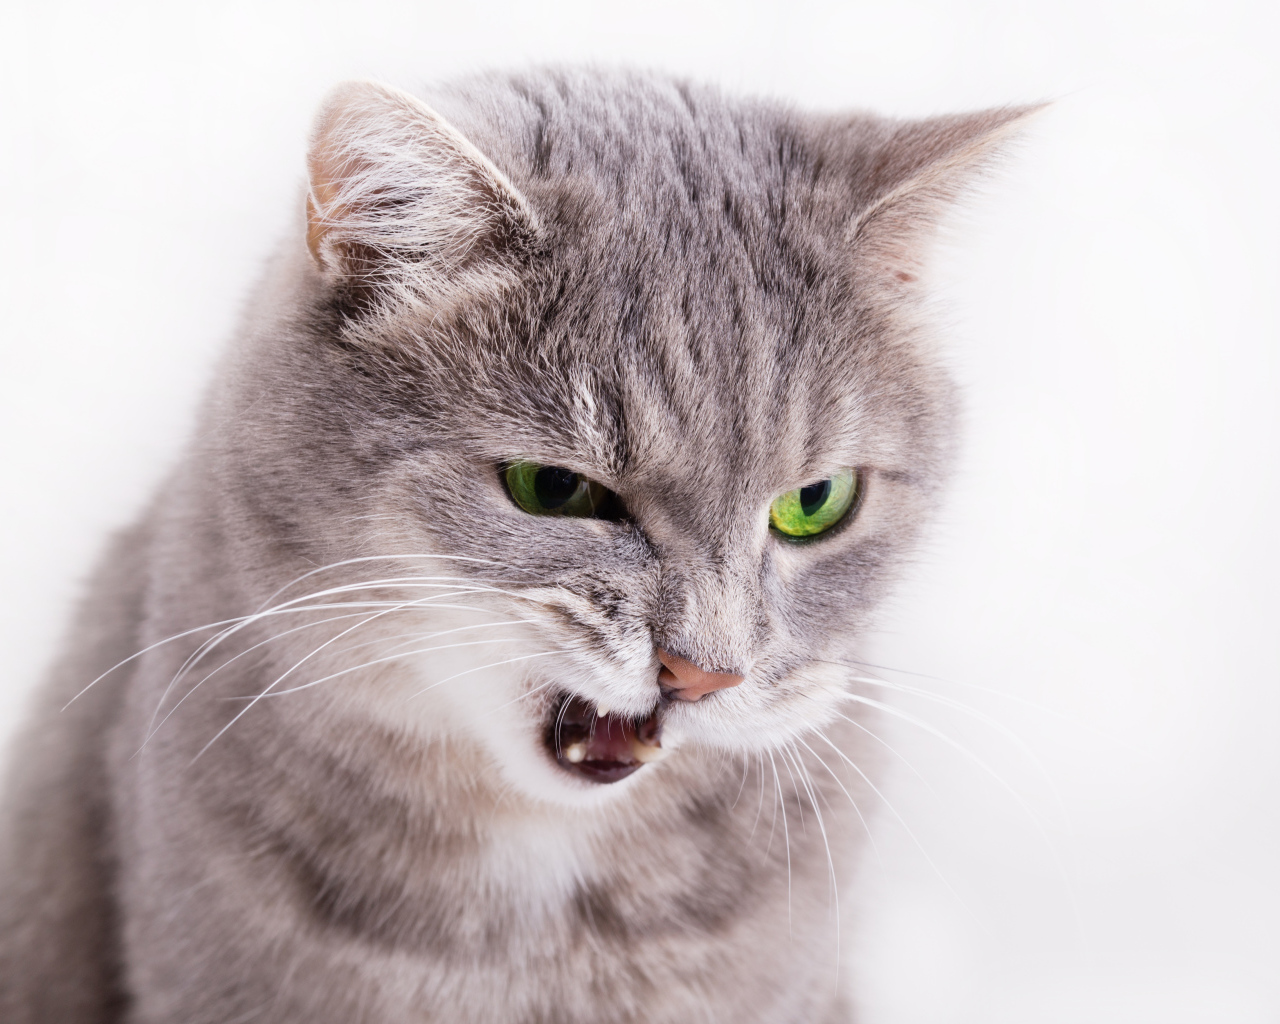 Хмурый взгляд серой кошки на белом фоне